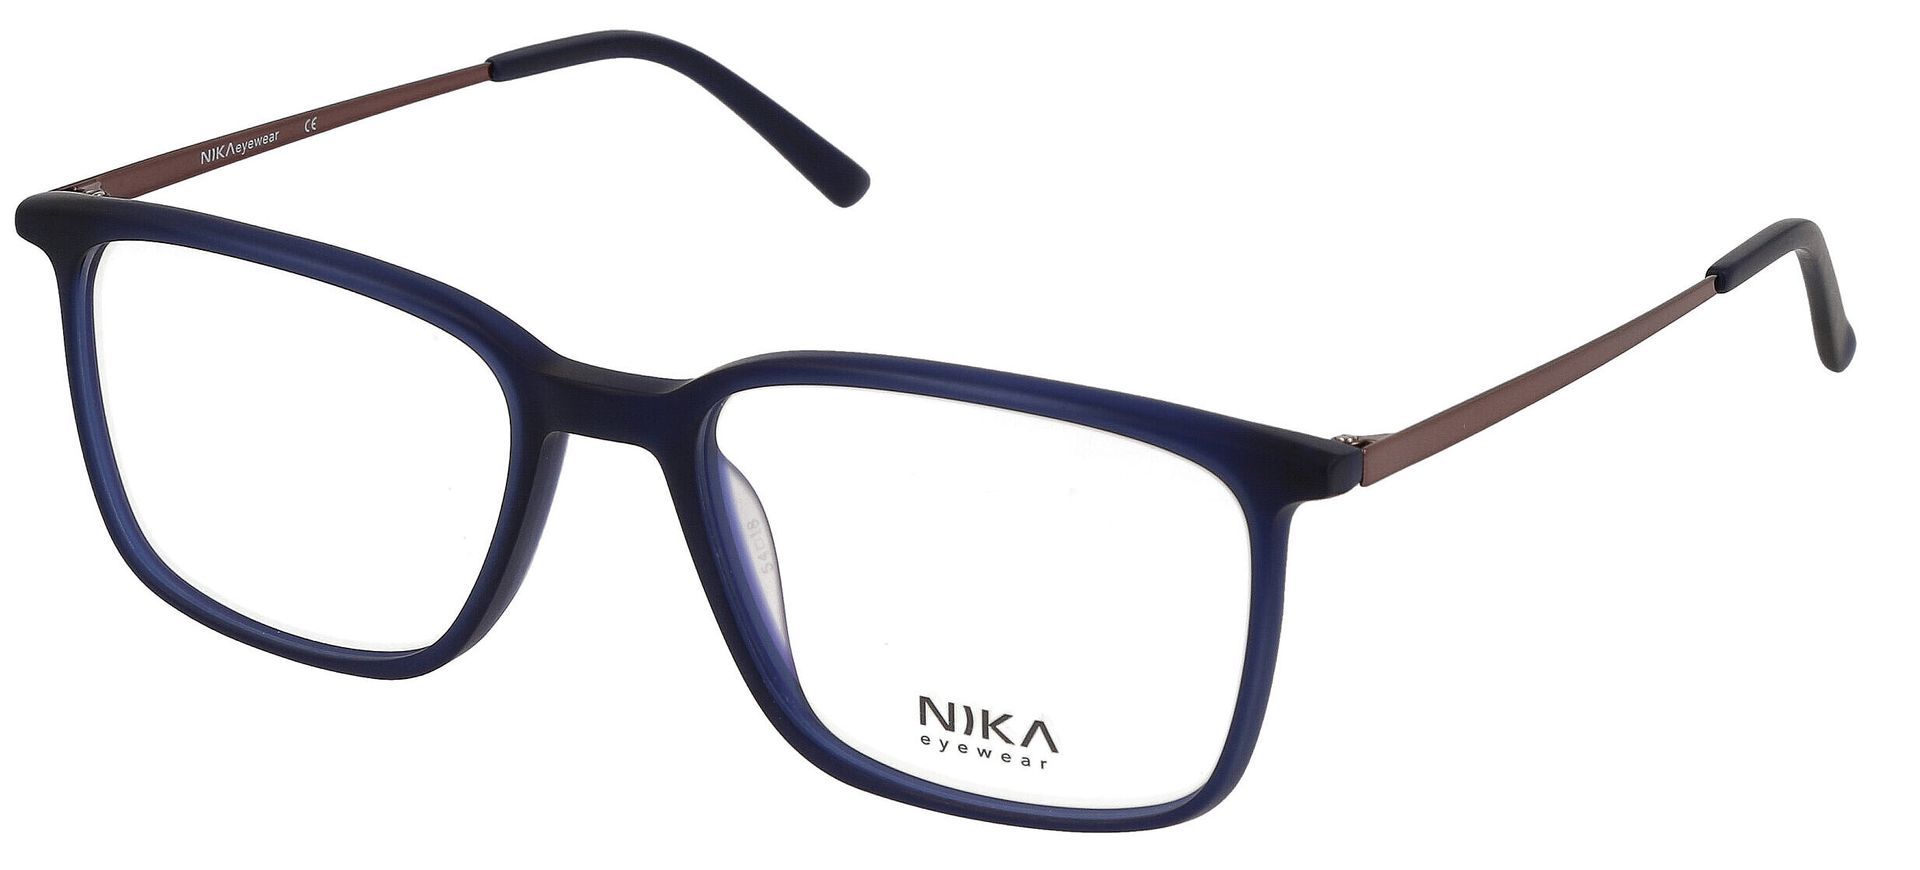 Komplettbrille Fassung NIKA Switzerland Brille mit Gläsern